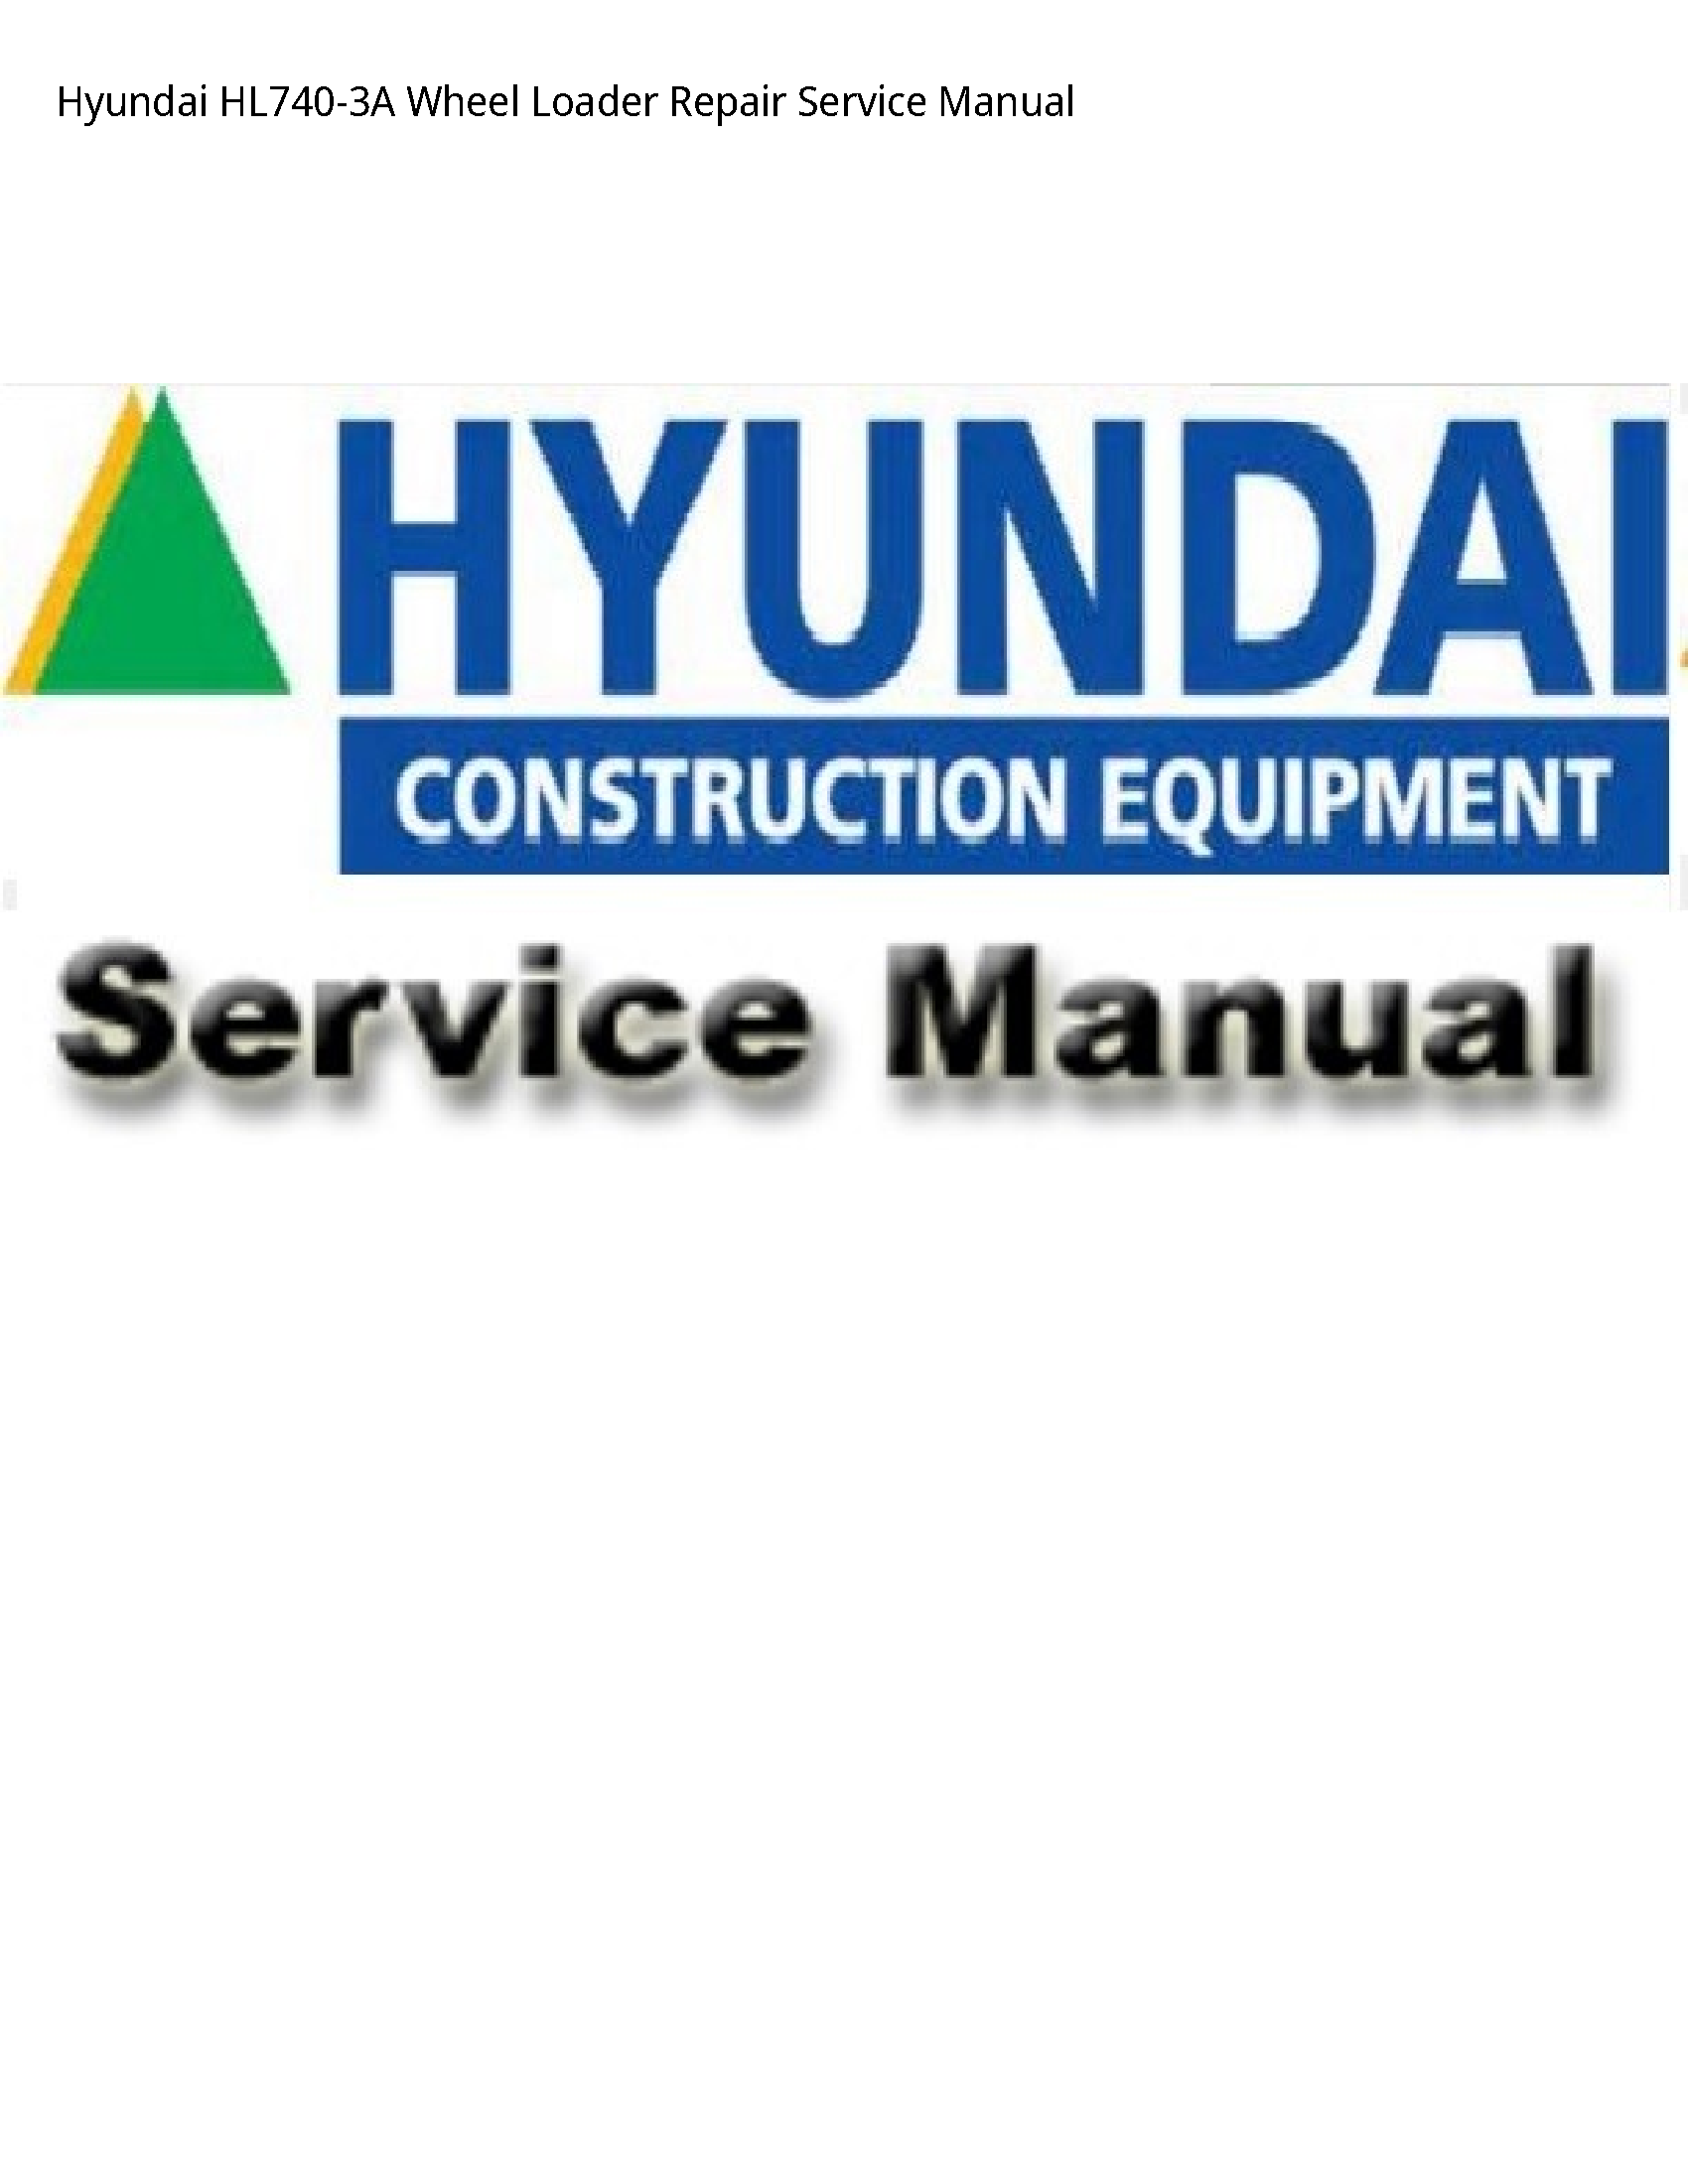 Hyundai HL740-3A Wheel Loader Repair Service manual